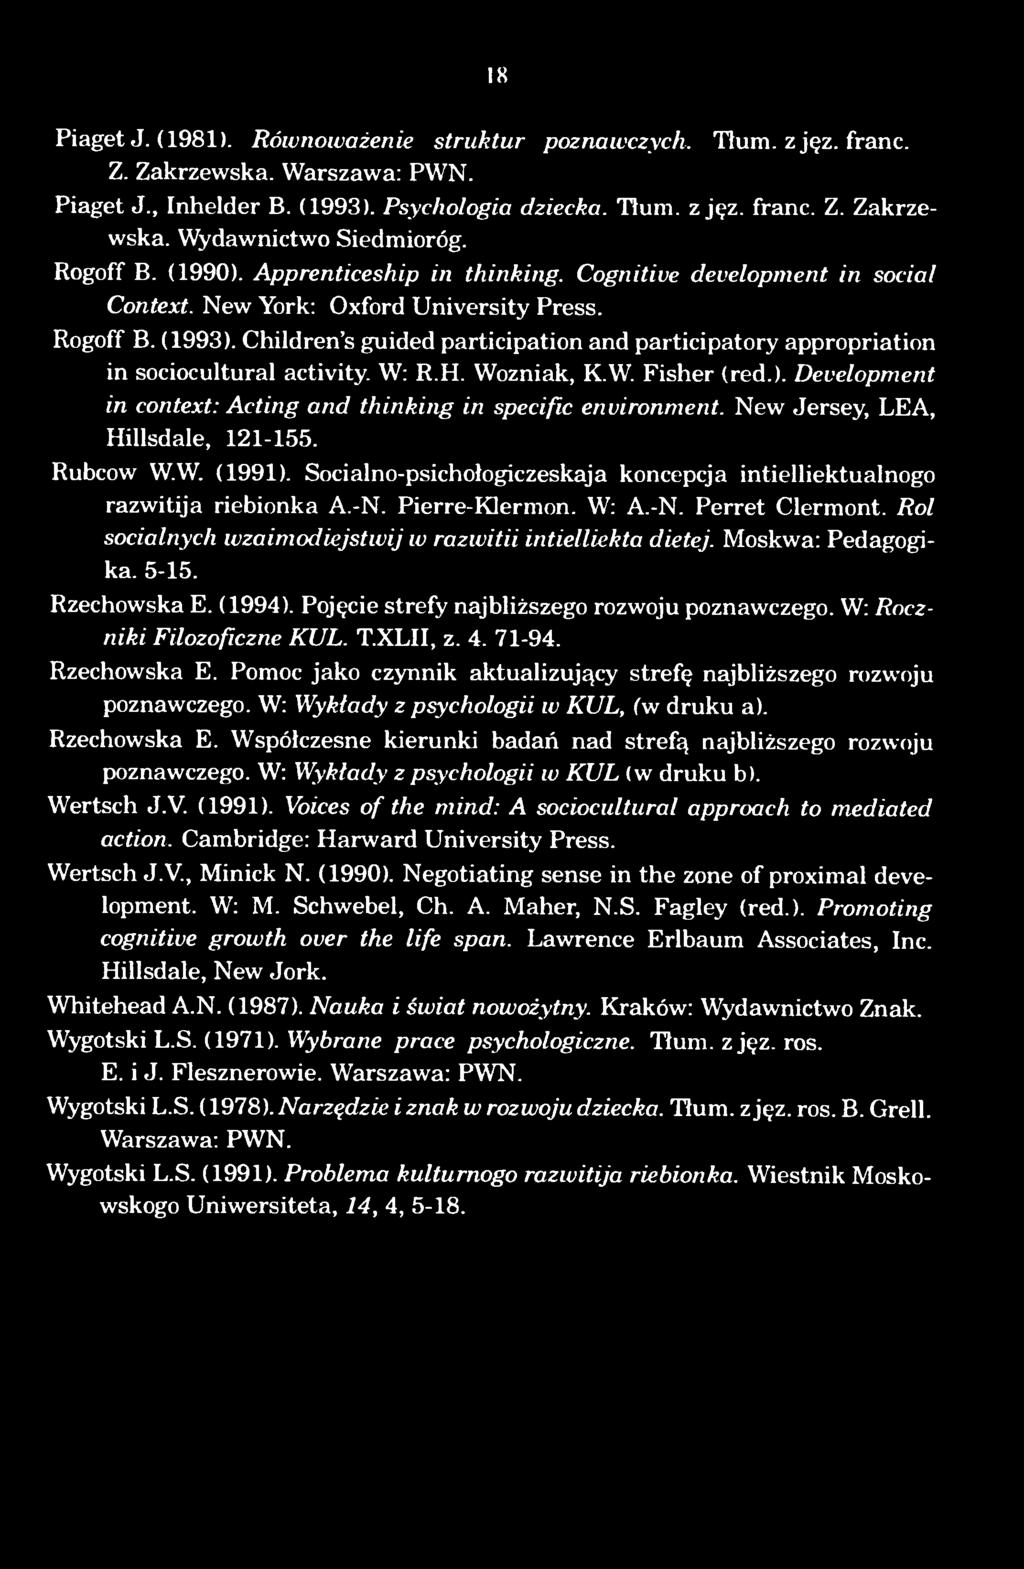 Rol socialnych wzaimodiejstwij w razwitii intielliekta dietej. Moskwa: Pedagogika. 5-15. Rzechowska E. (1994). Pojecie strefy najblizszego rozwoju poznawczego. W: Roczniki Filozoficzne KUL. T.xLII, z.